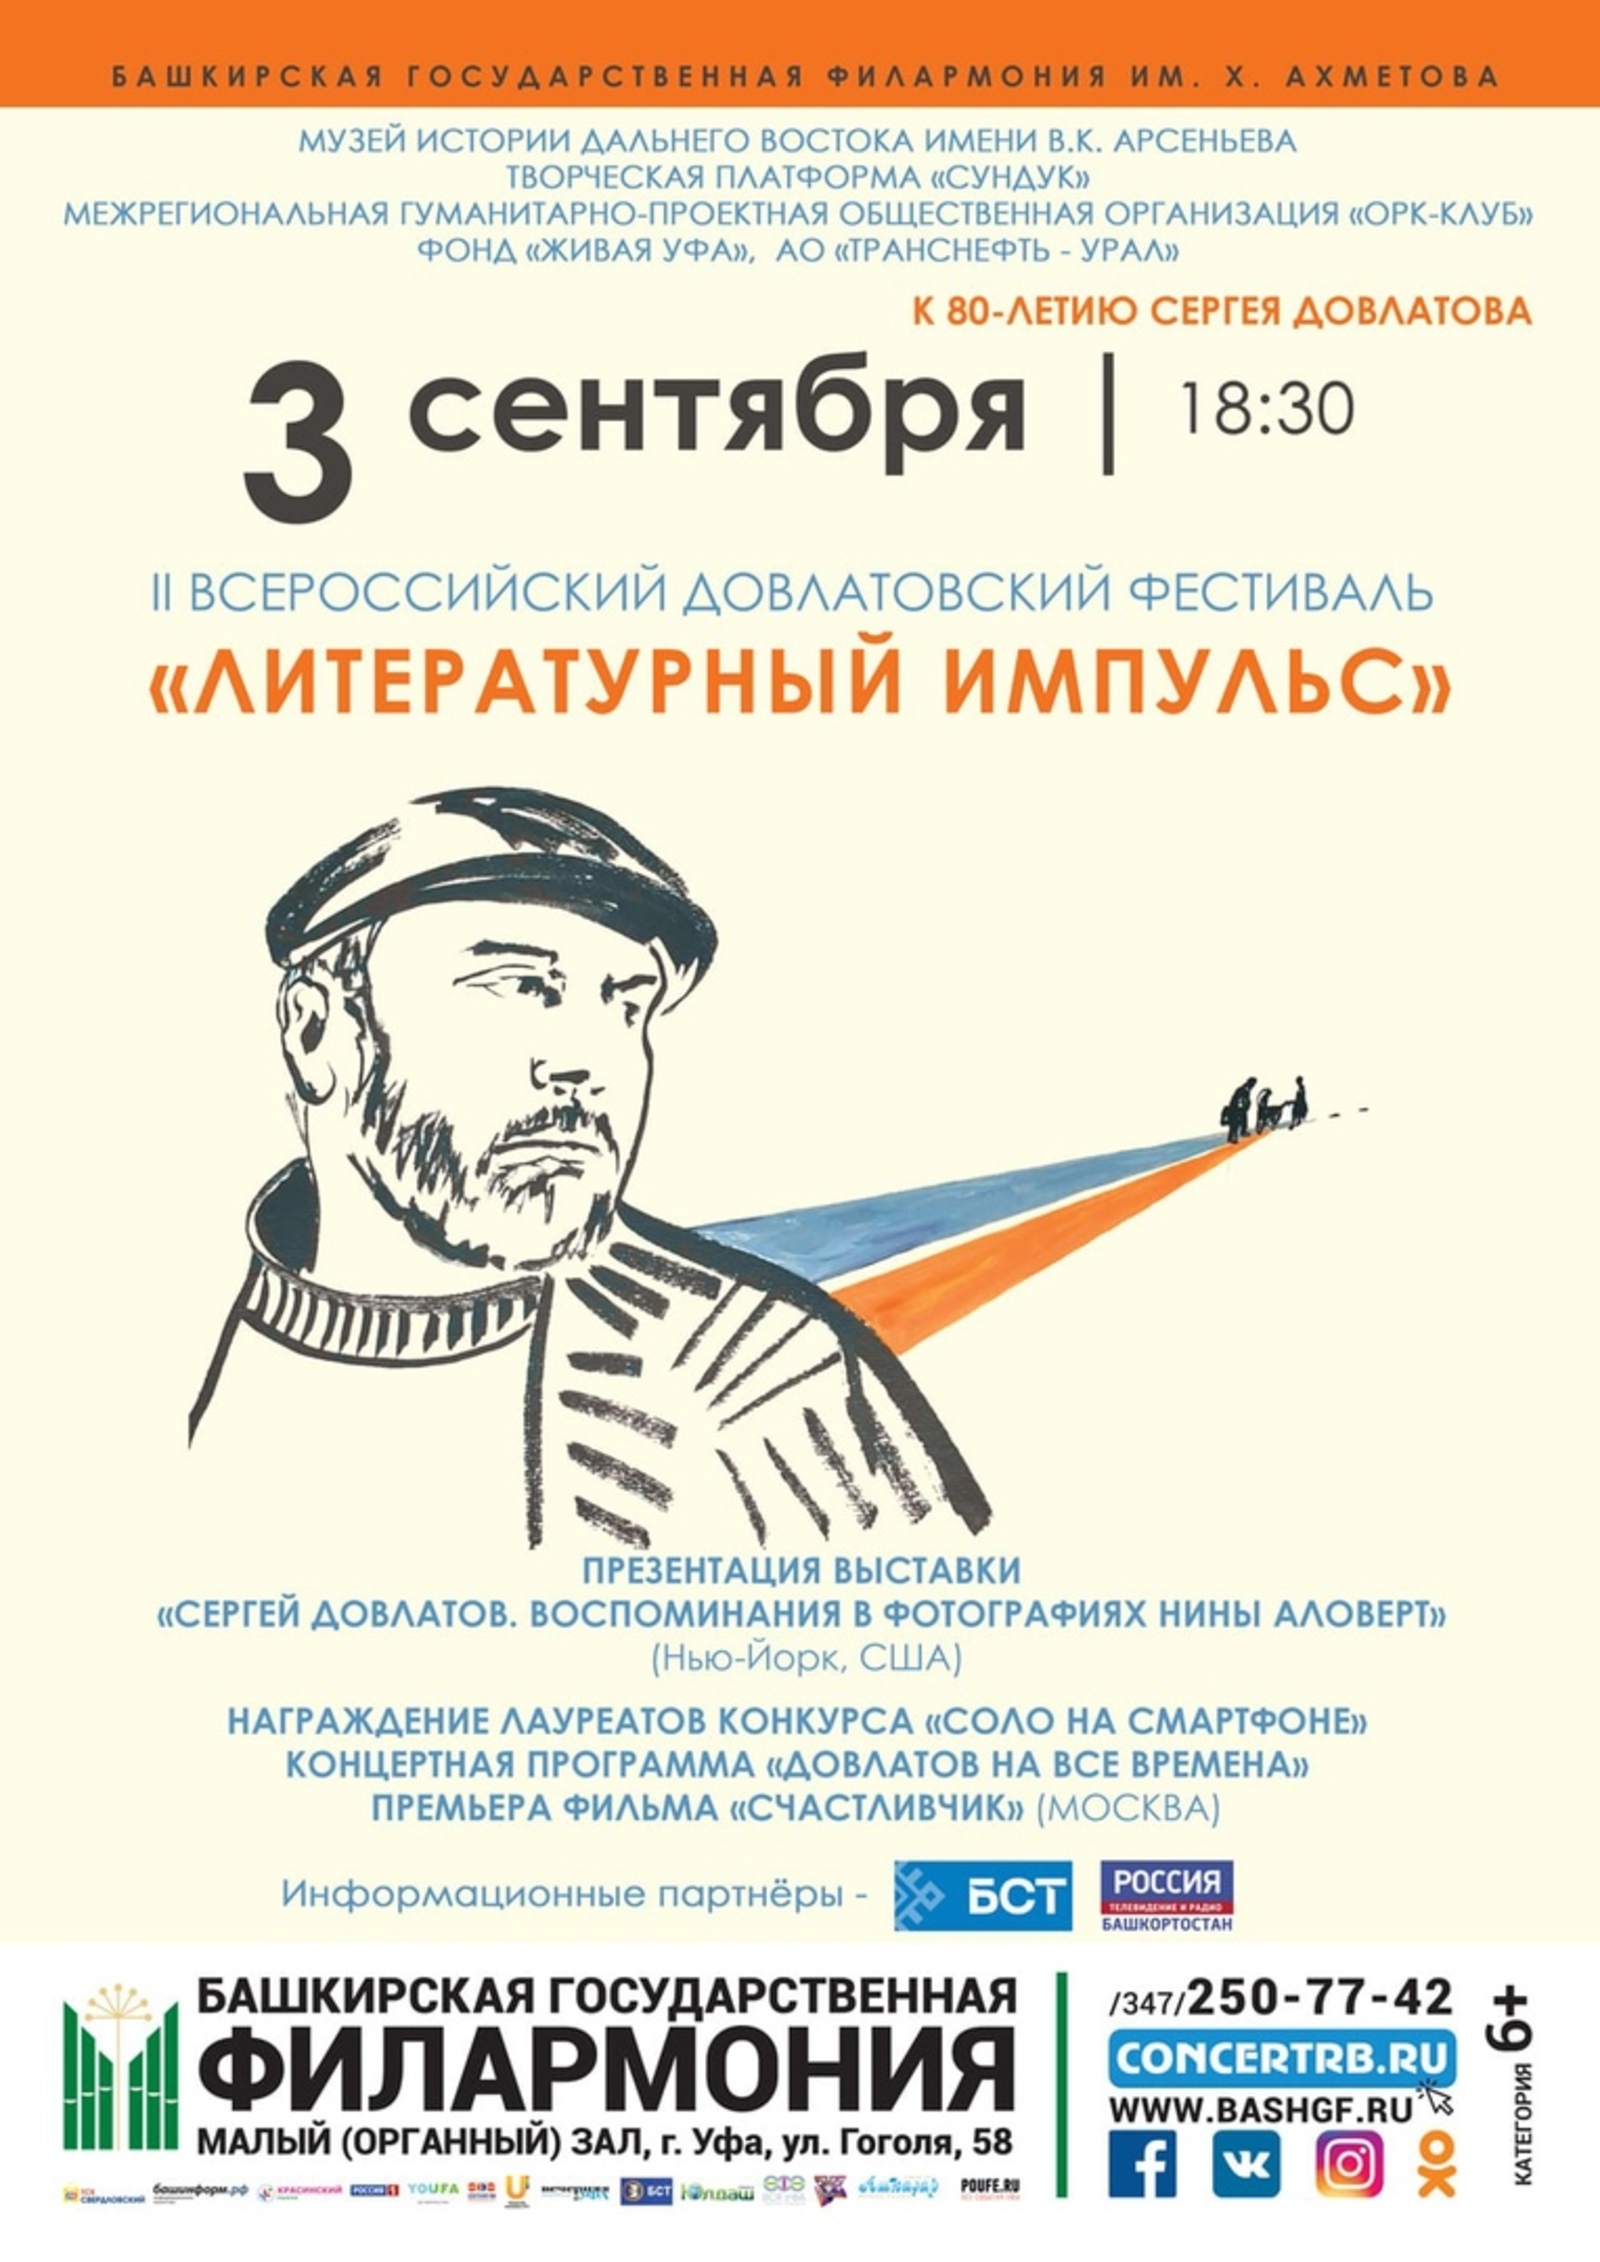 3 сентября в Уфе состоится II Всероссийский Довлатовский фестиваль «Литературный импульс»